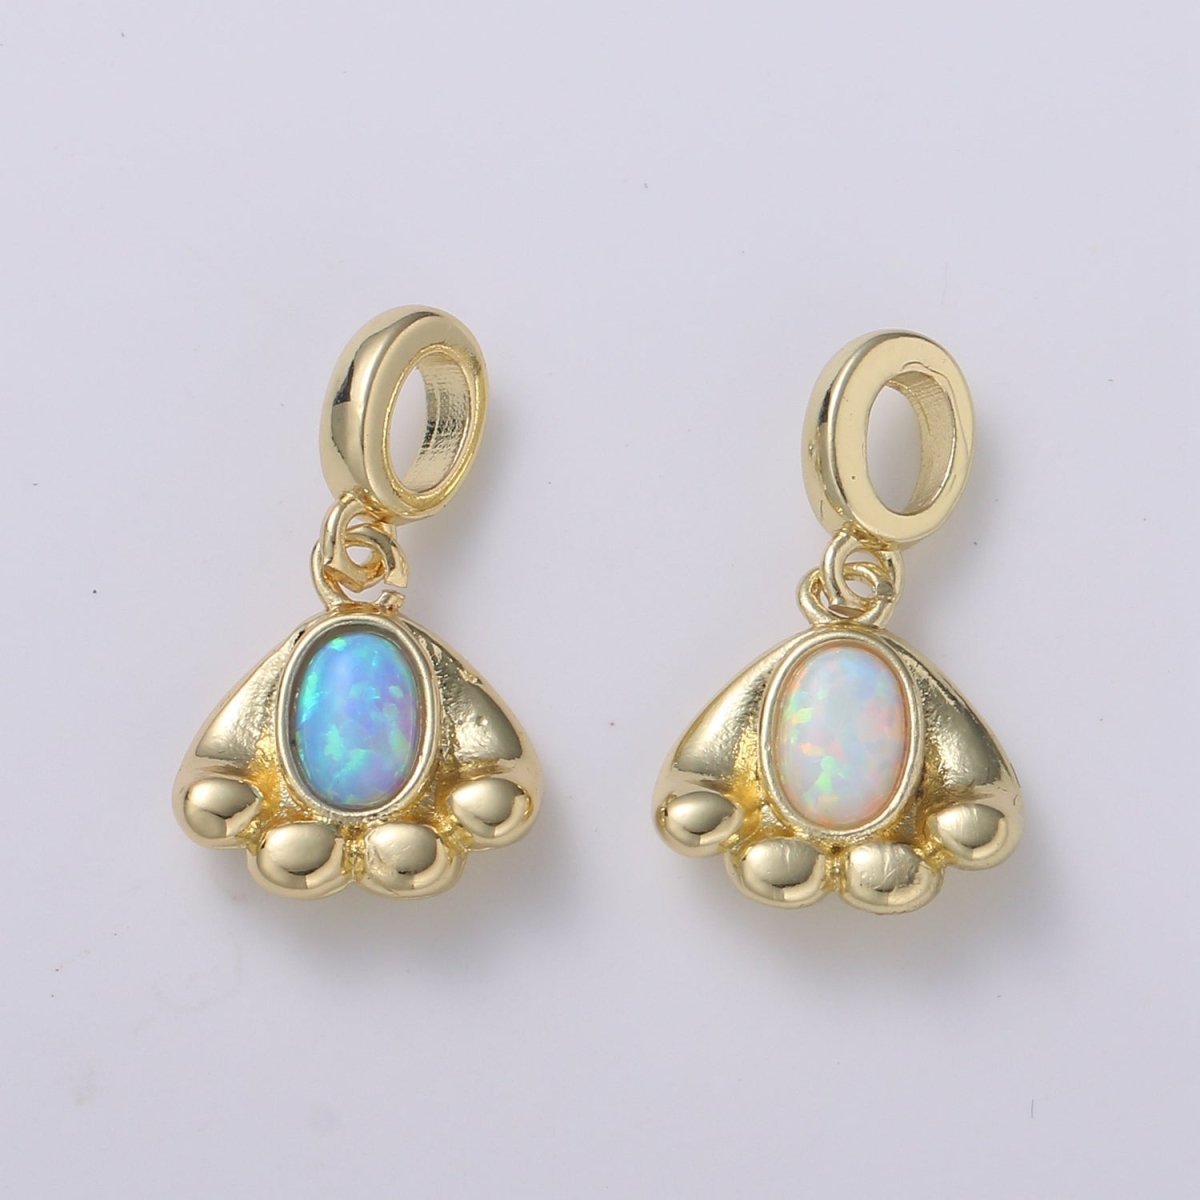 Cloud 24K Gold Opal CZ Pendant Charm Celestial Pendant Charm for Bracelet Necklace White, Blue Pendant Jewelry H-555 H-563 - DLUXCA